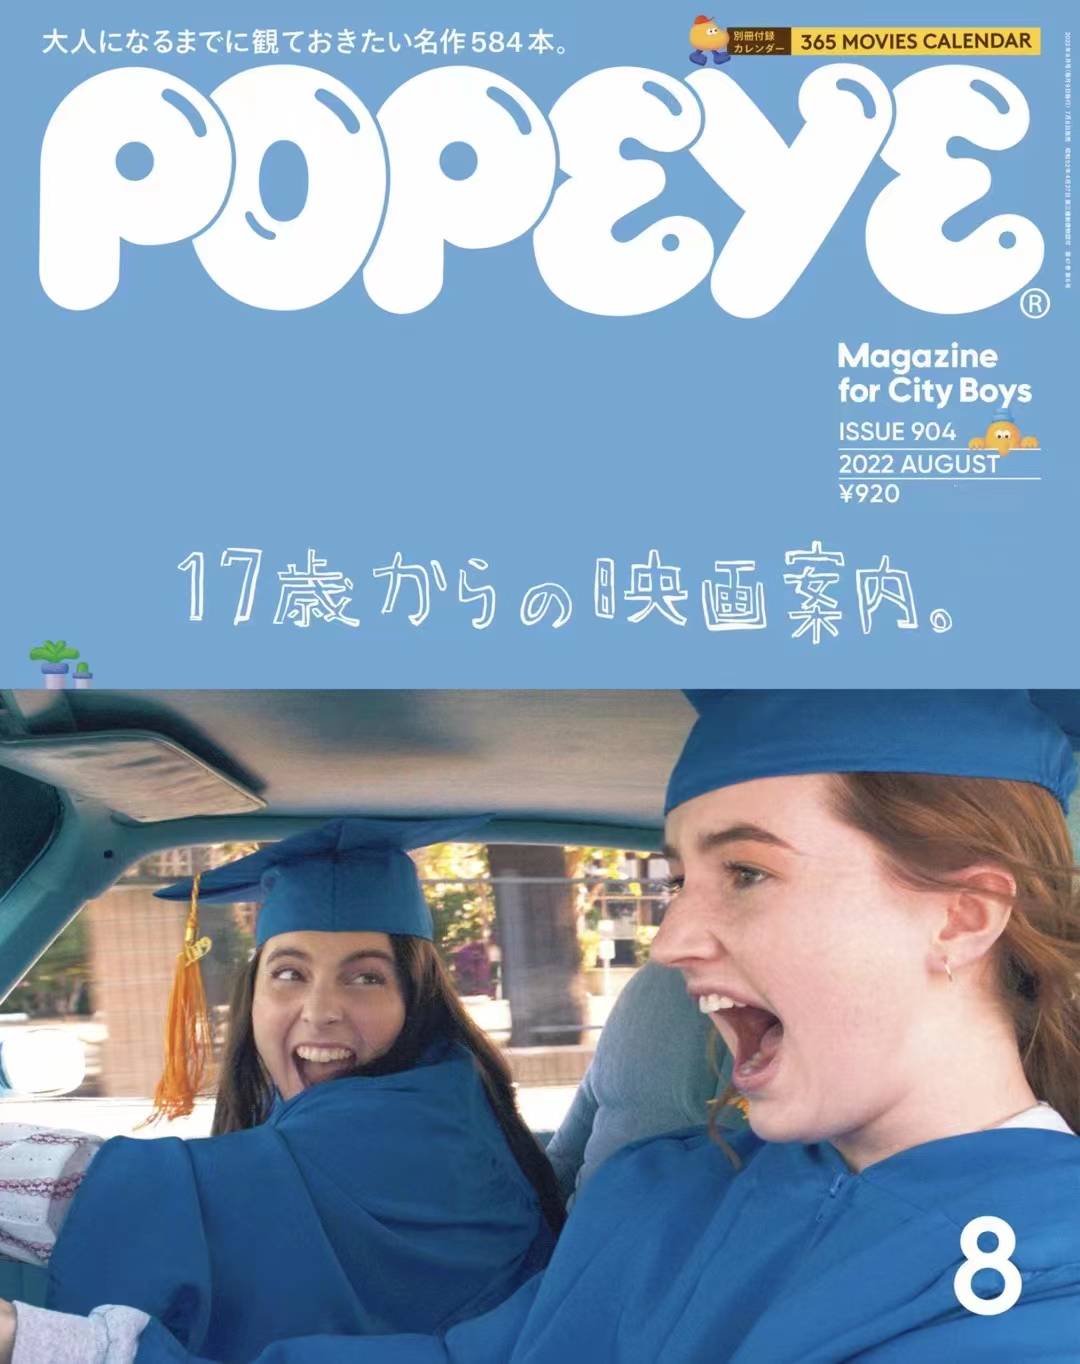 【瑜伽健身上新】 【日本】 002 Popeye 2022年08月 日本时尚男士服装搭配穿搭杂